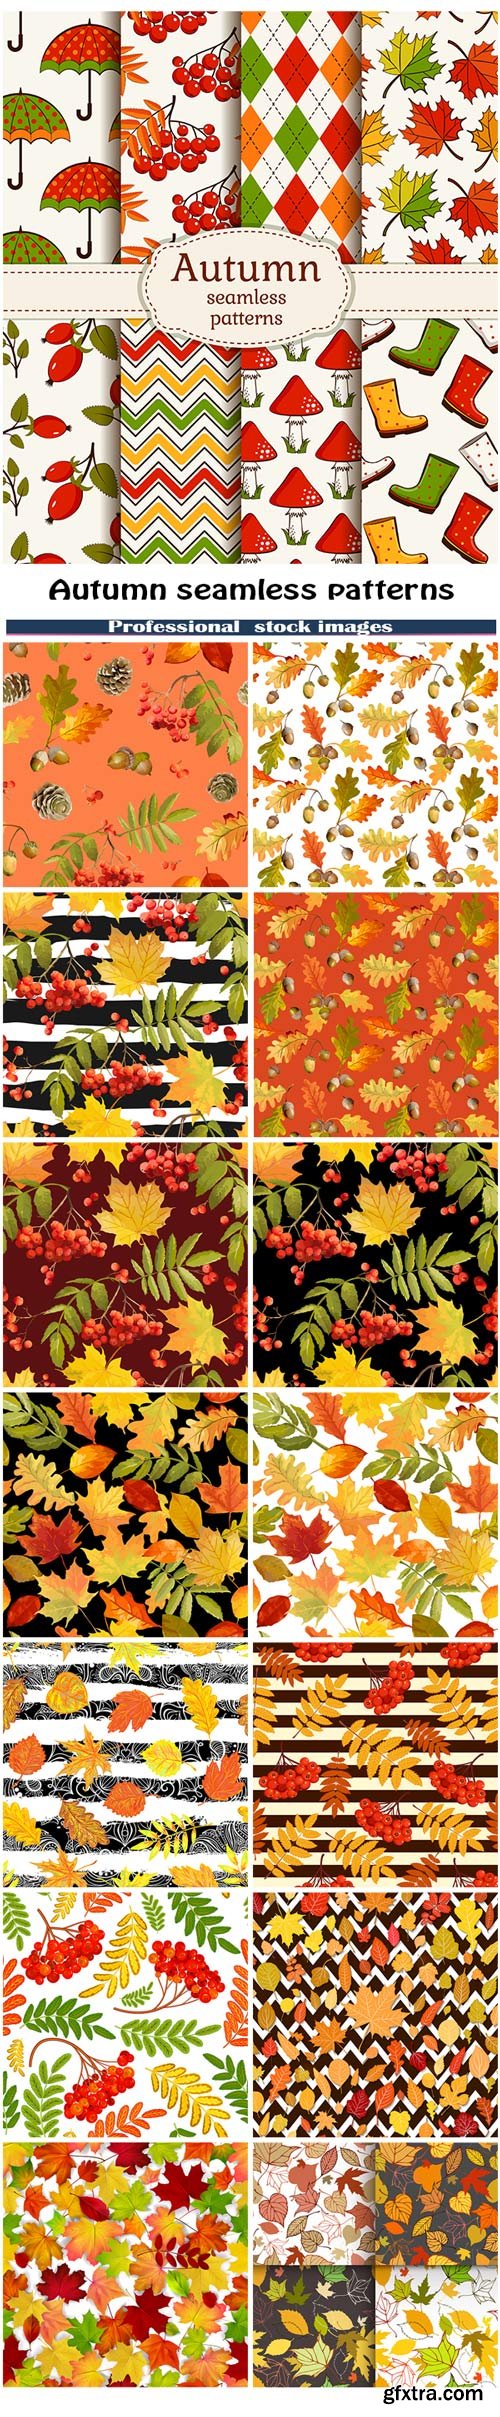 Autumn seamless patterns